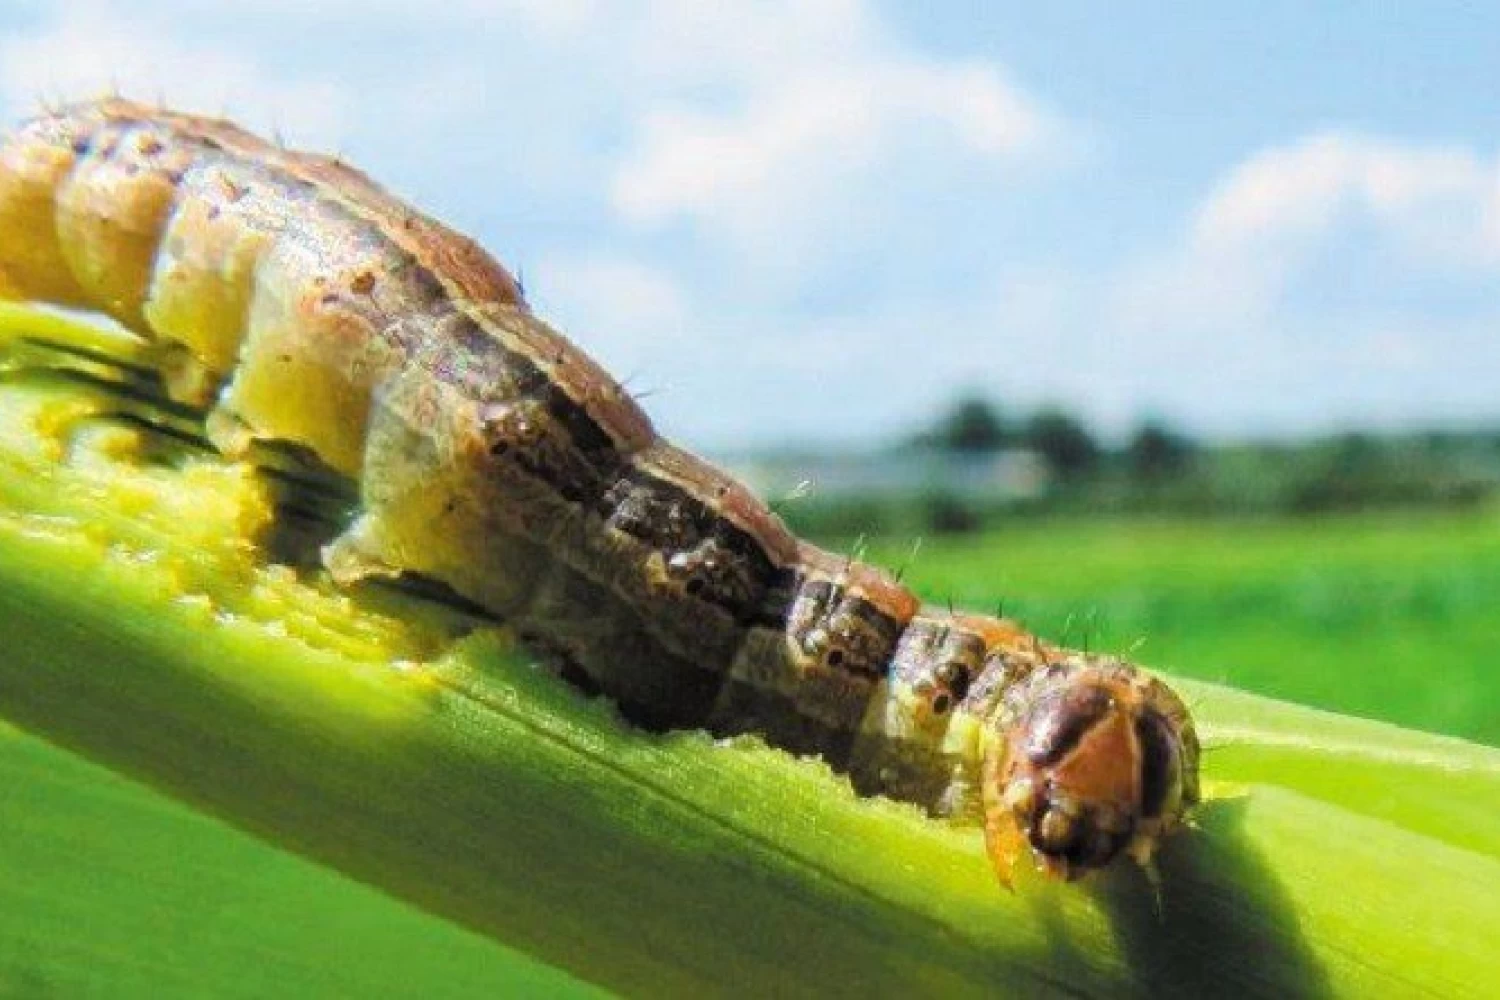 Δ. Αλμωπίας - Υπουργείο Αγροτικής Ανάπτυξης και Τροφίμων: Σχέδιο δράσης για την καταπολέμηση του επιβλαβούς οργανισμού Spodoptera frugiperda